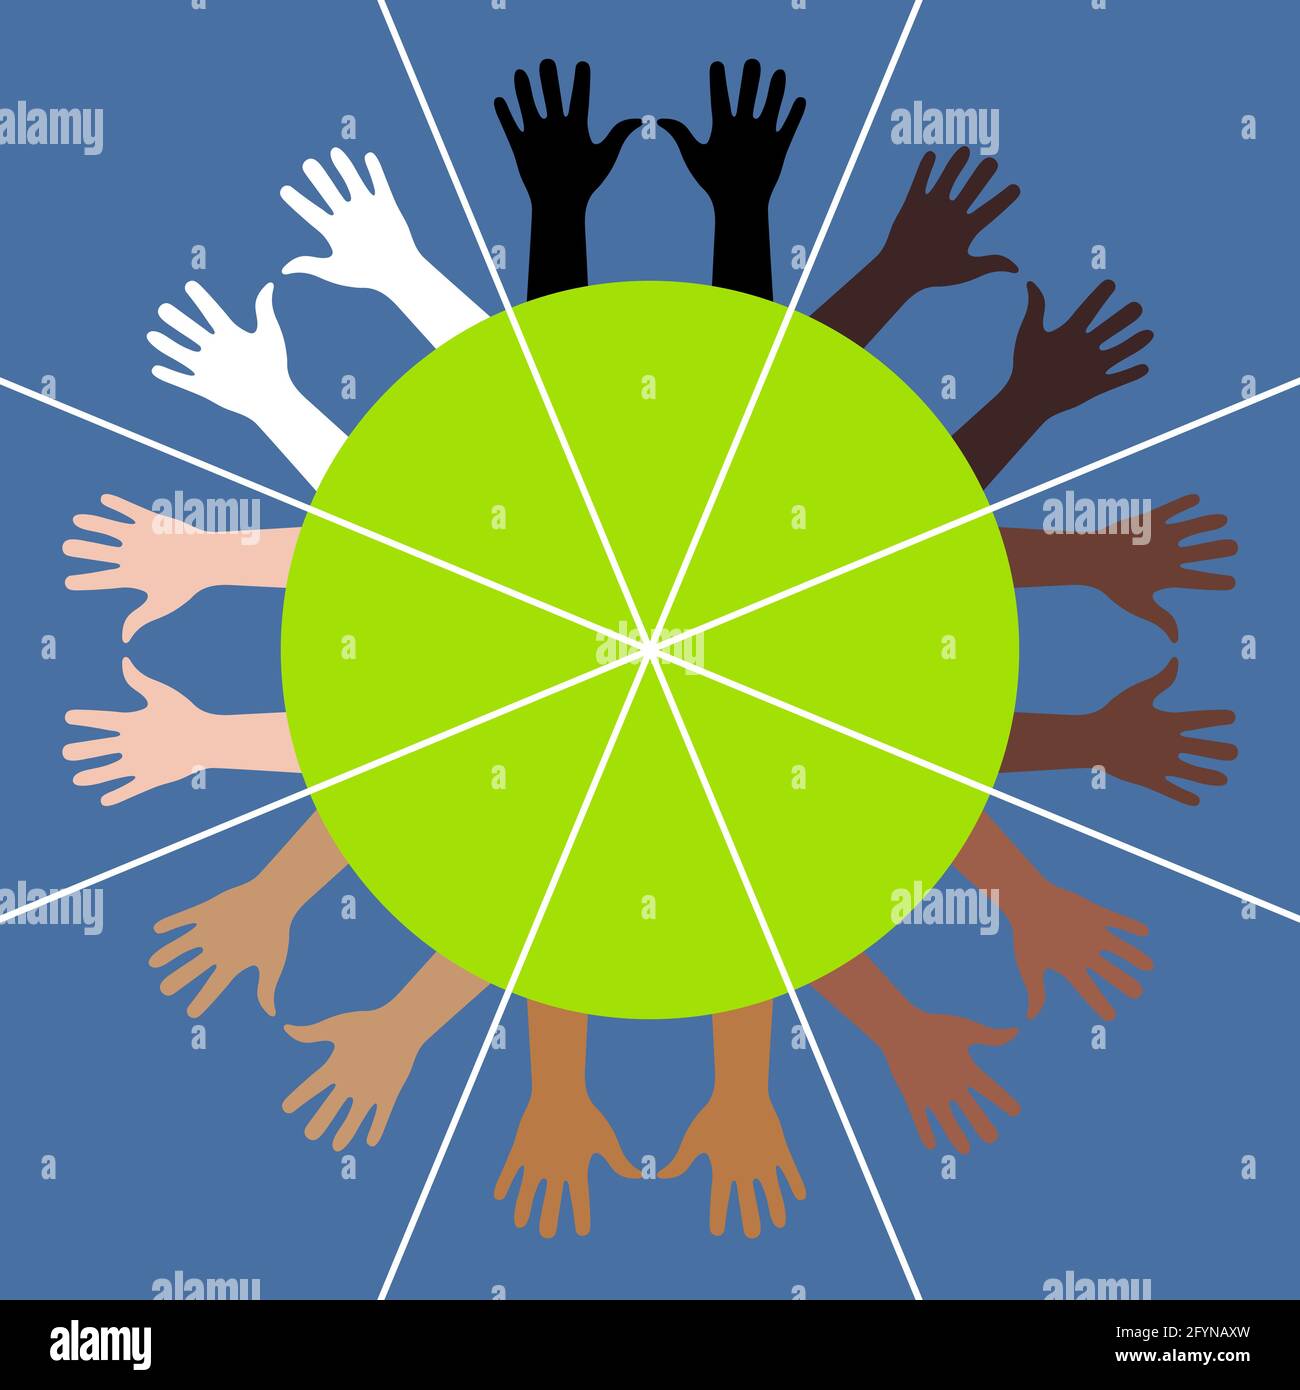 Colori diversi le mani divergono radialmente dal centro del cerchio. Sfera divisa in 8 settori. 4 razze umane e 8 coppie di mani. Mani con i palmi in su. Verde Illustrazione Vettoriale